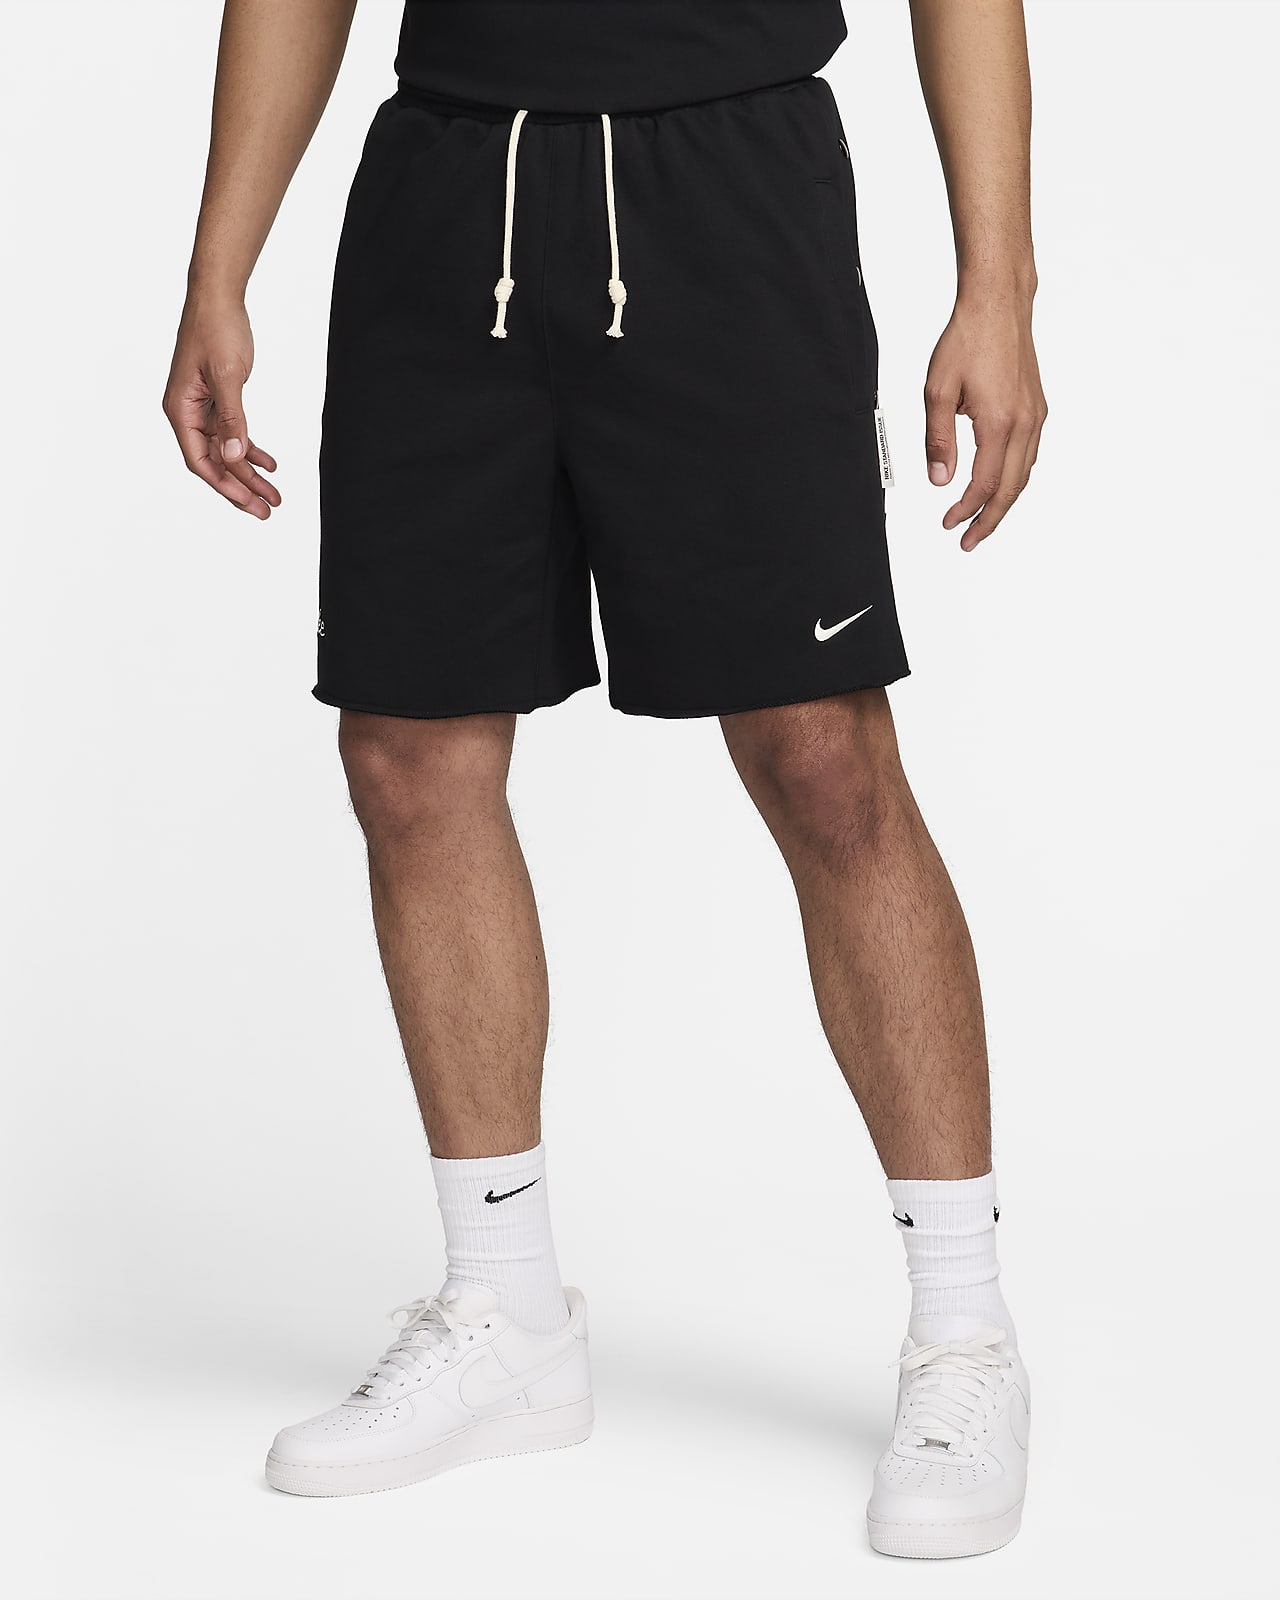 Ανδρικό σορτς μπάσκετ Dri-FIT Nike Standard Issue 20 cm